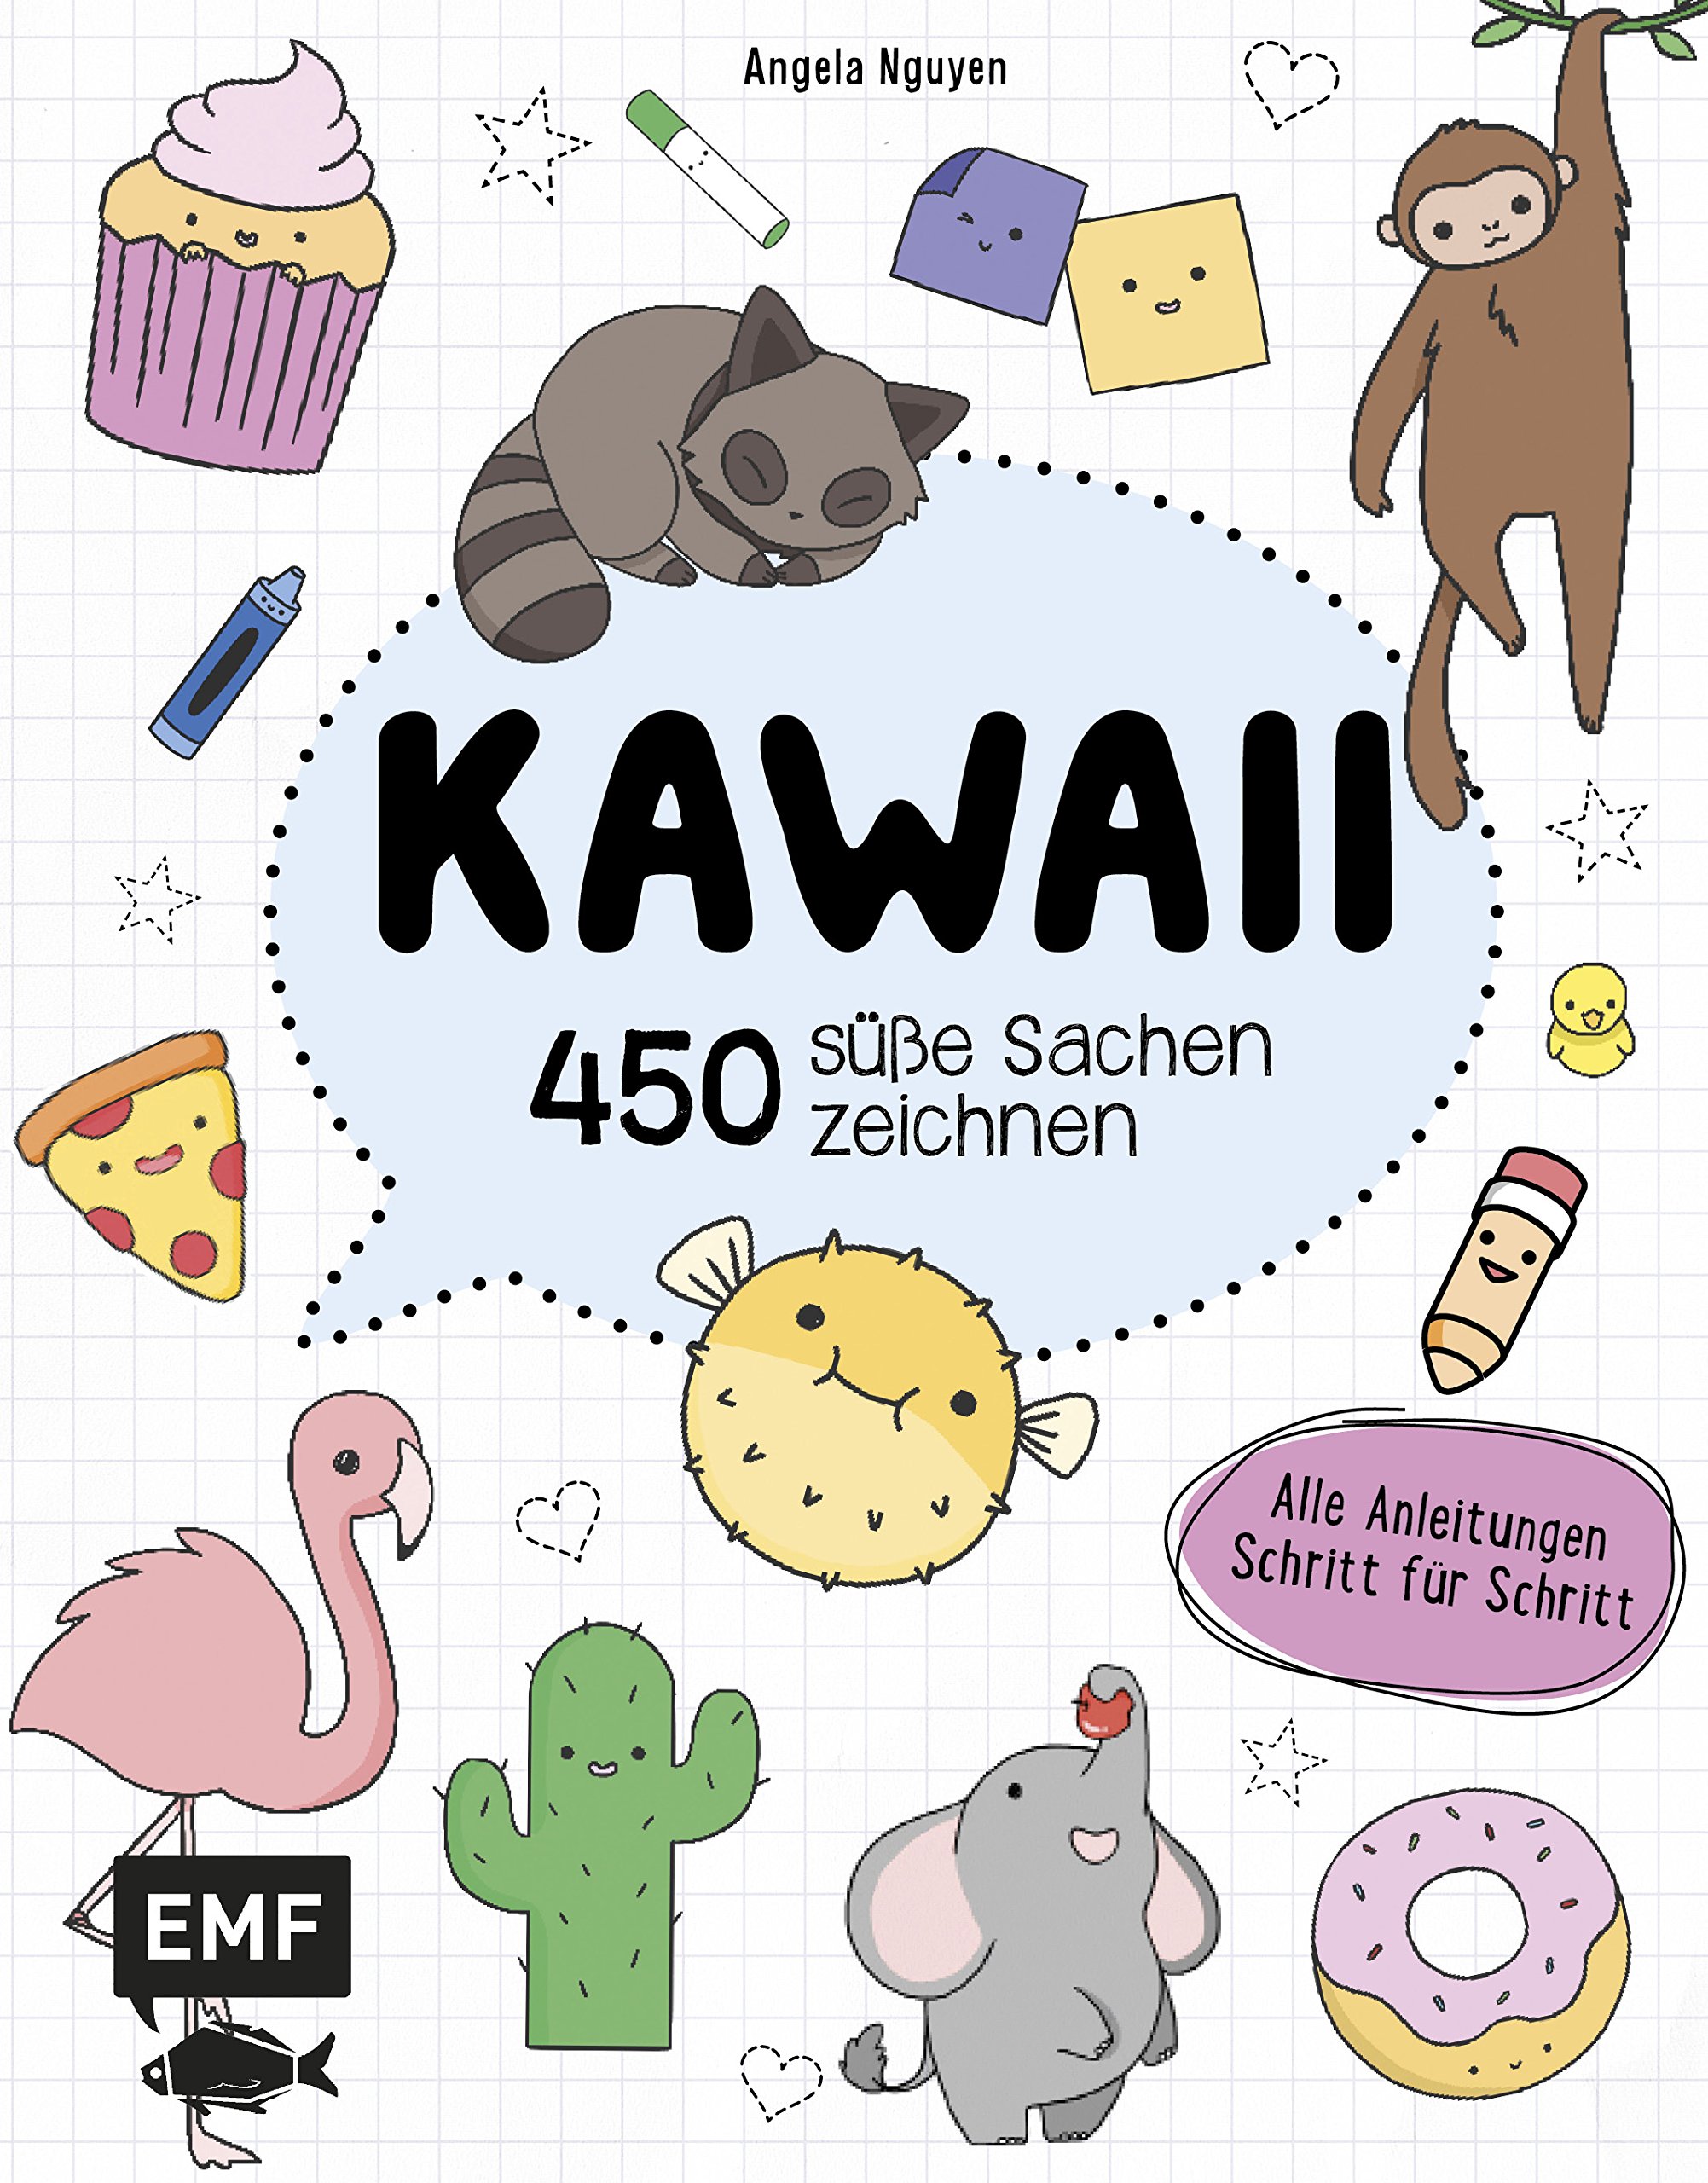 https://comic-portal.net/media/image/83/42/08/450-susse-sachen-zeichnen-kawaii-zeichenbuch.jpg